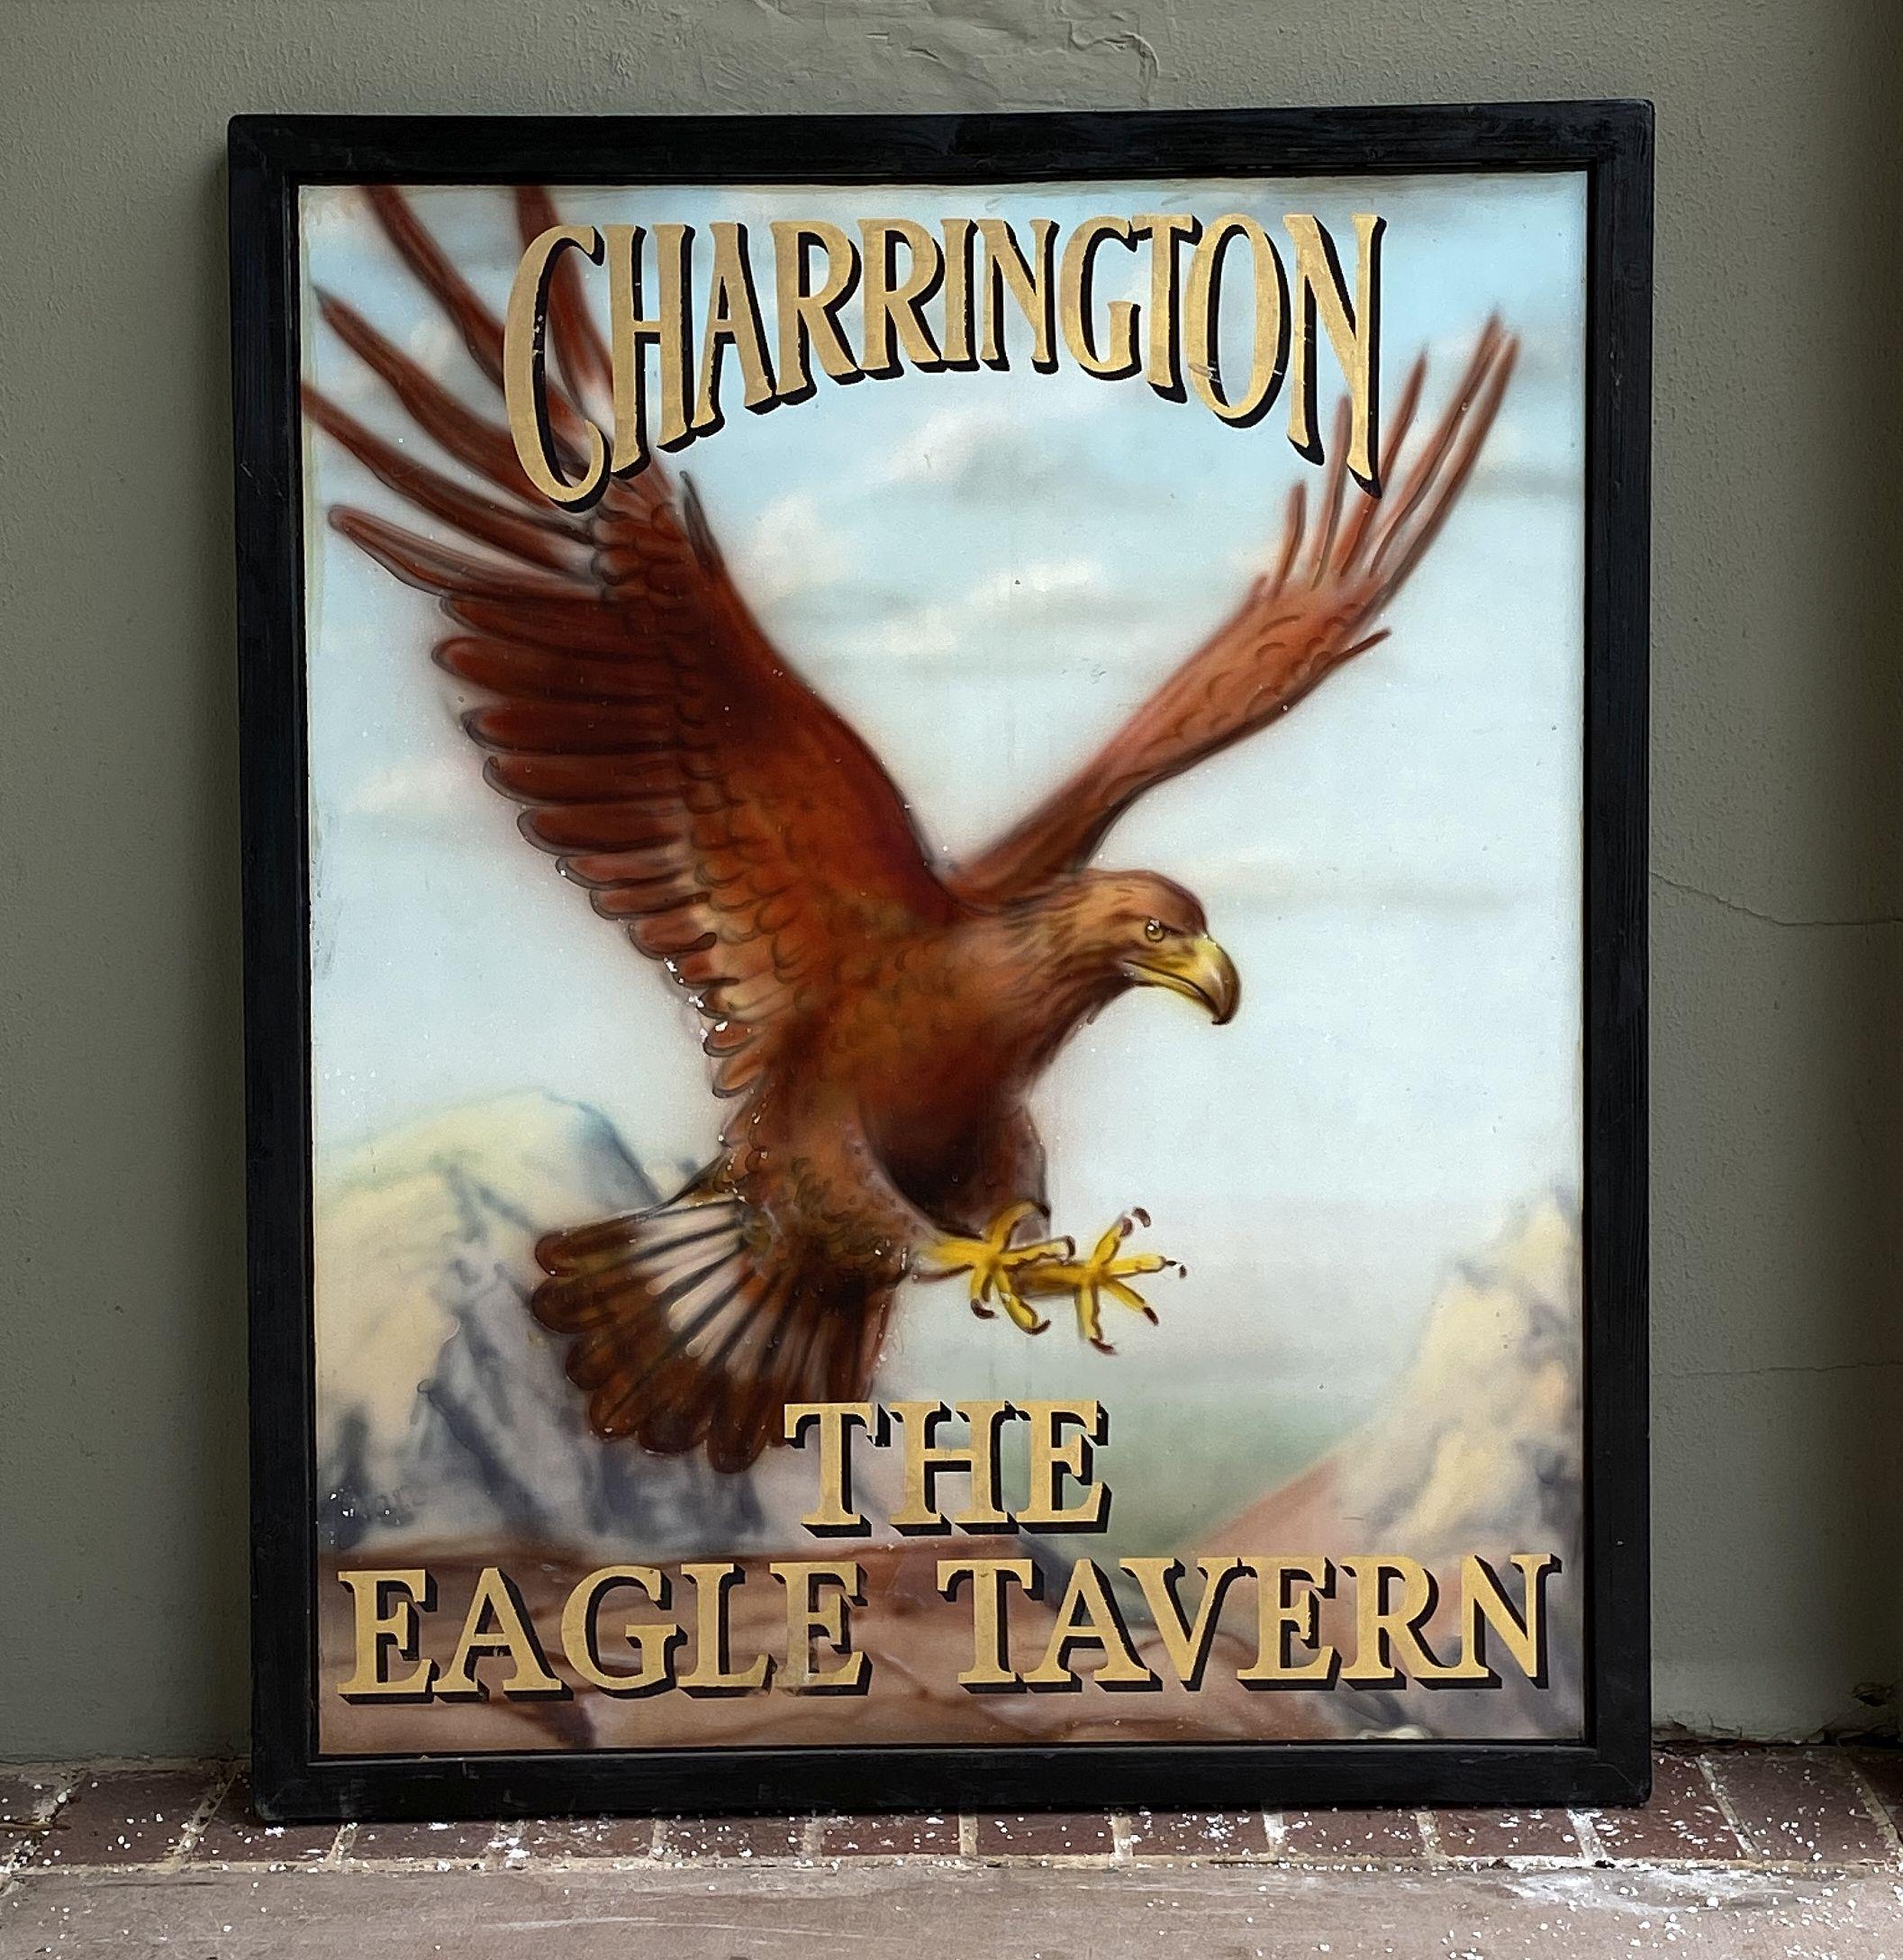 Authentique enseigne de pub anglaise (unilatérale) représentant un aigle en vol avec des montagnes en arrière-plan, intitulée : Charrington - The Eagle Tavern (Charrington - La taverne de l'aigle).

Un très bel exemple d'œuvre d'art publicitaire